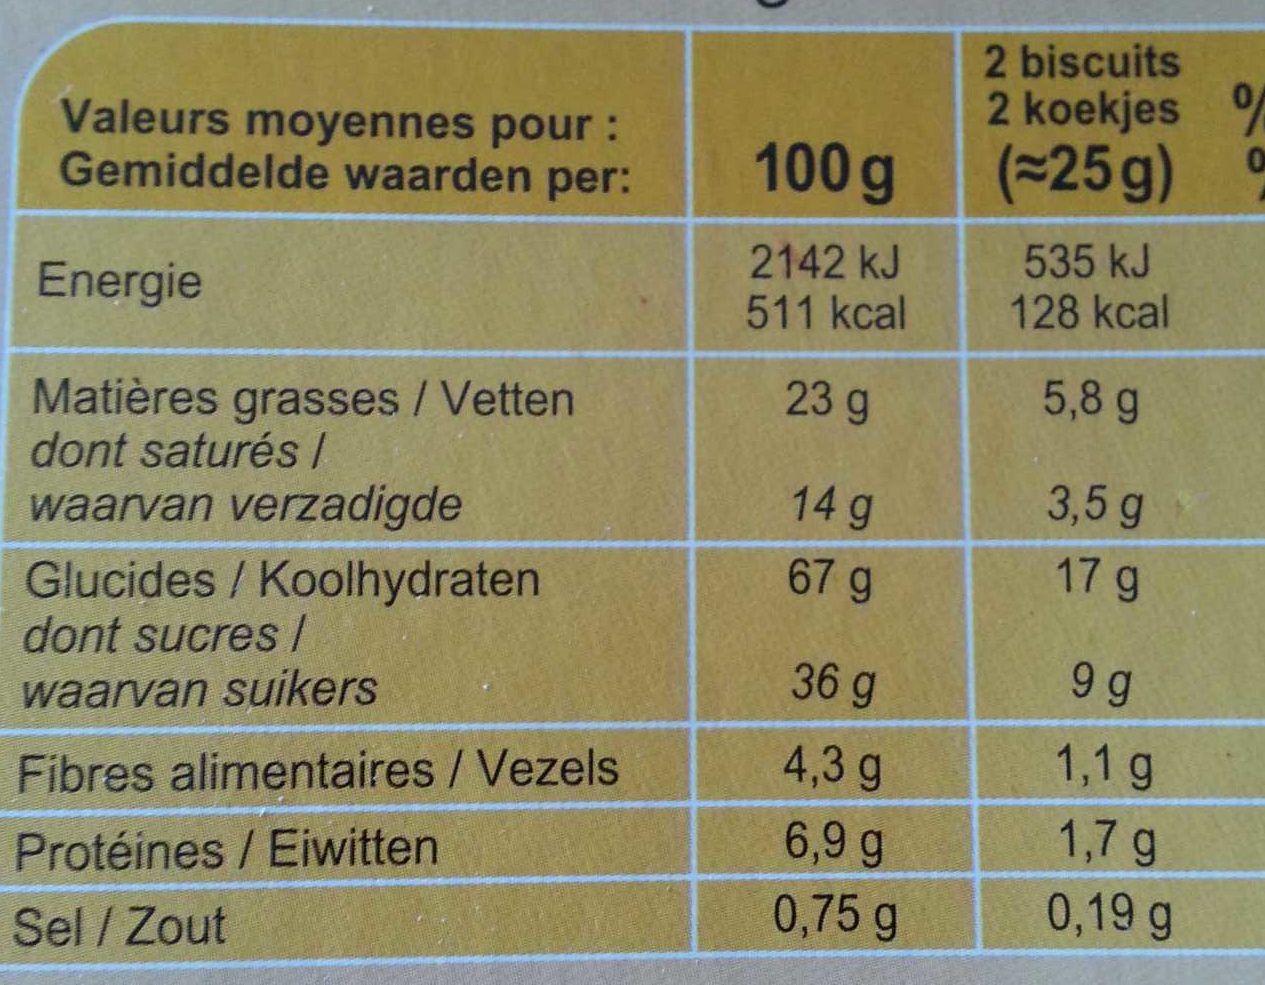 POCKET LE PETIT BEURRE TABLETTE Chocolat noir - Información nutricional - fr